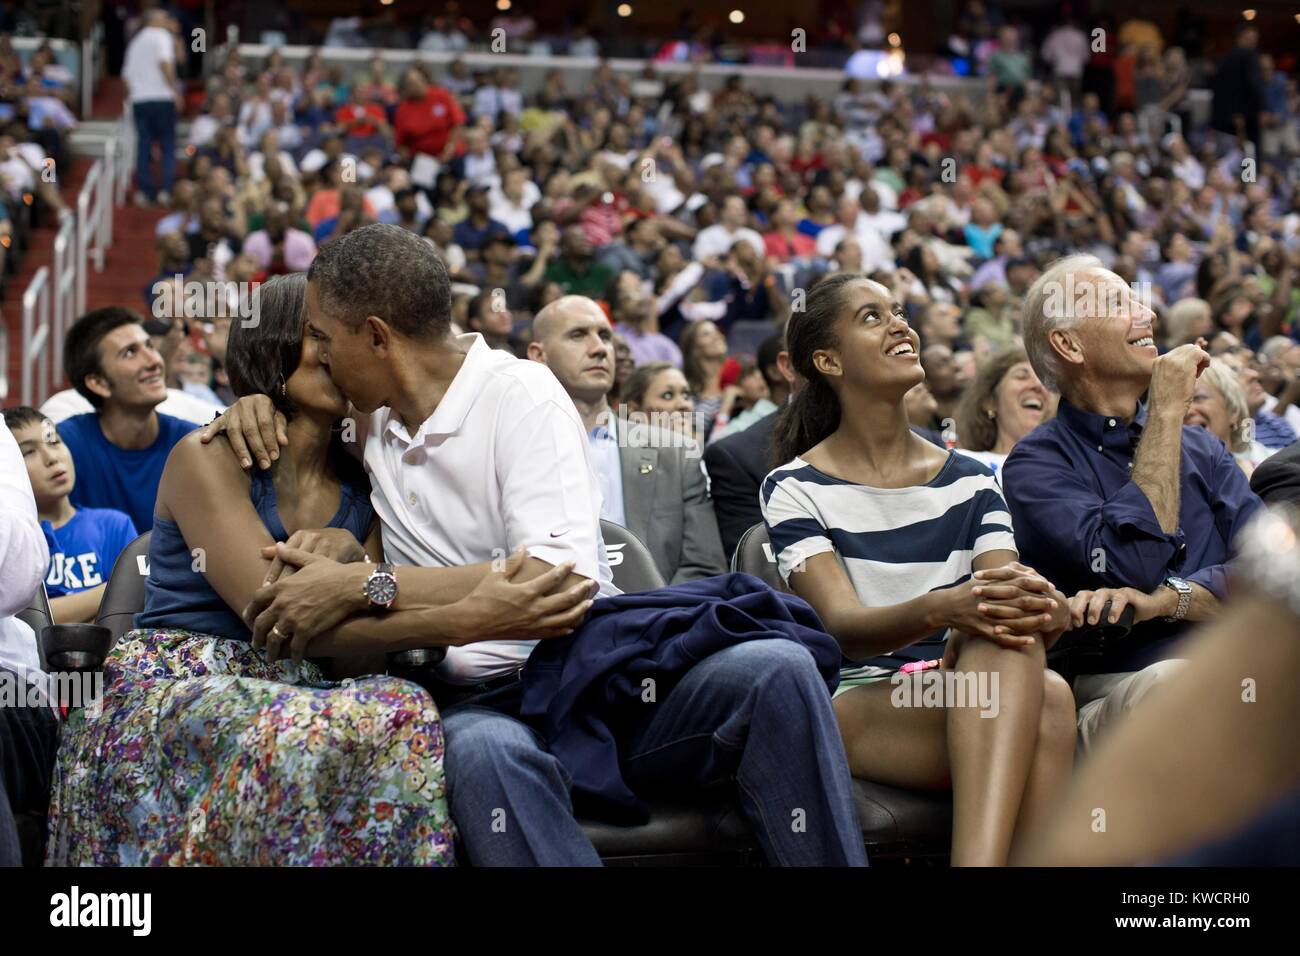 Präsident Barack Obama Küsse der First Lady Michelle Obama für die "Cam" Küssen. Malia und Joe Biden beobachten Sie den Kuss auf Jumbotron Bildschirme das Verizon Center in Washington, D.C., 16. Juli 2012. Sie besuchten das Spiel der US-Men's Olympic Basketball Mannschaft gegen Brasilien. (BSLOC 2015 3 25) Stockfoto